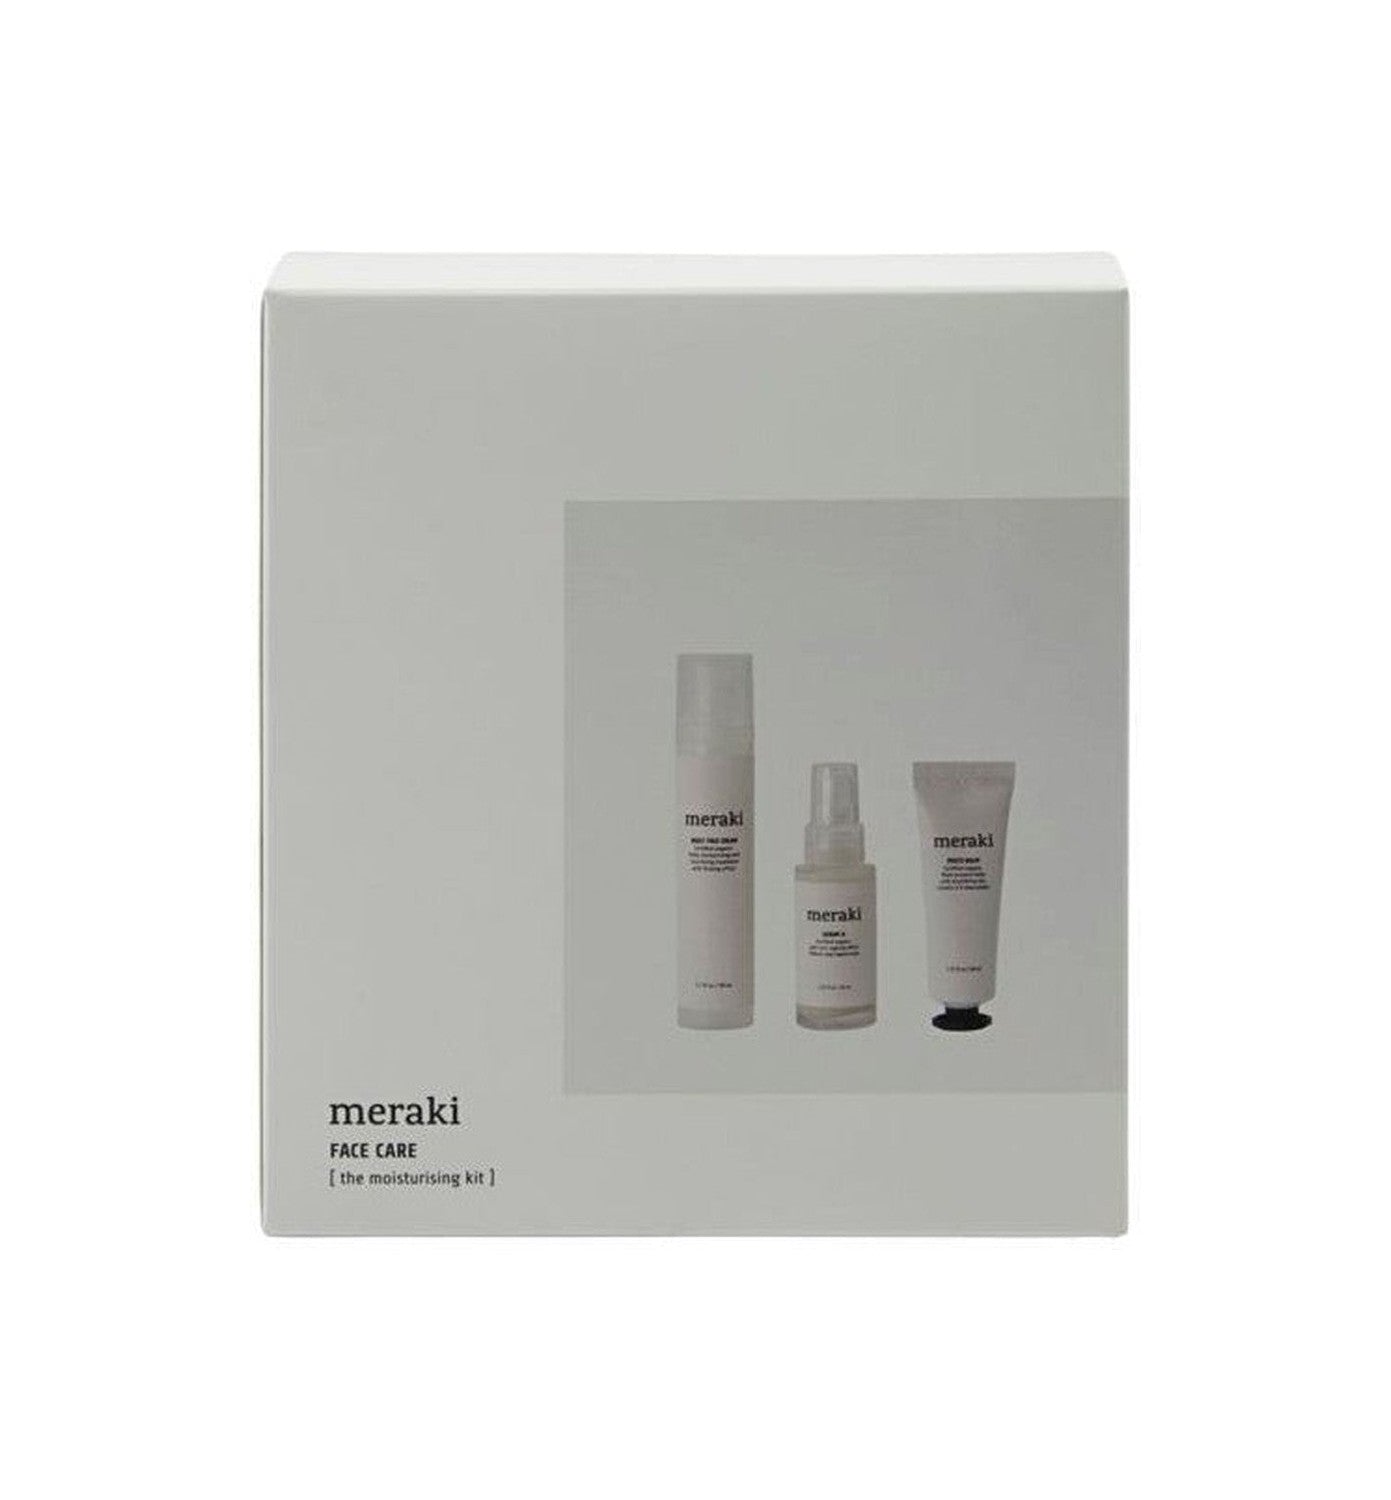 Meraki Gift Box, The Moisturizing Kit - Face Care